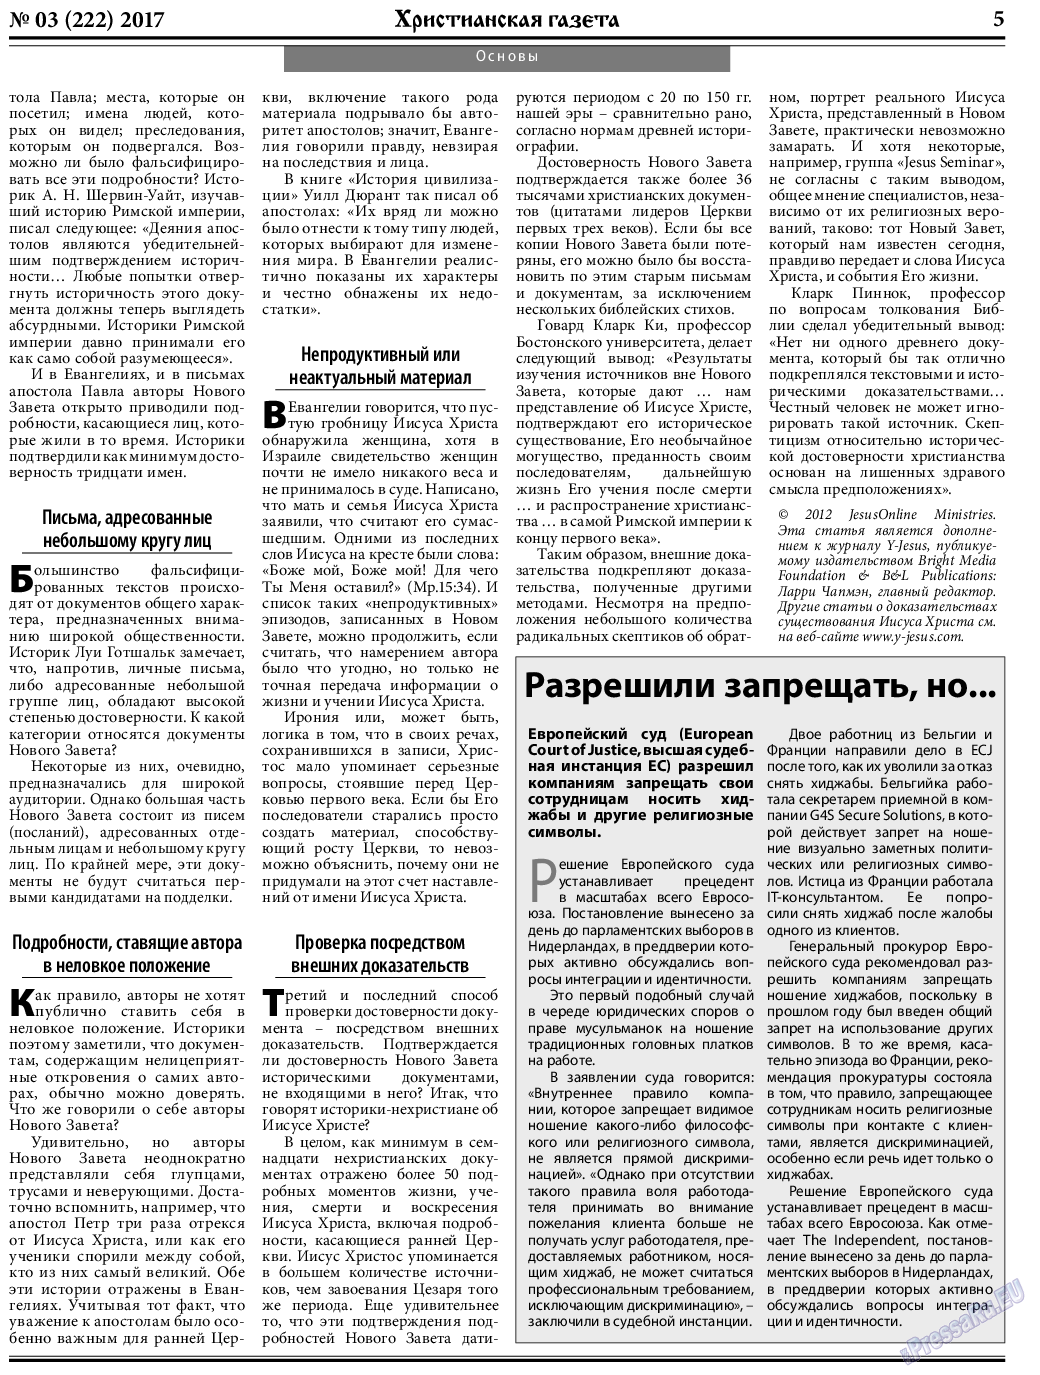 Христианская газета, газета. 2017 №3 стр.5